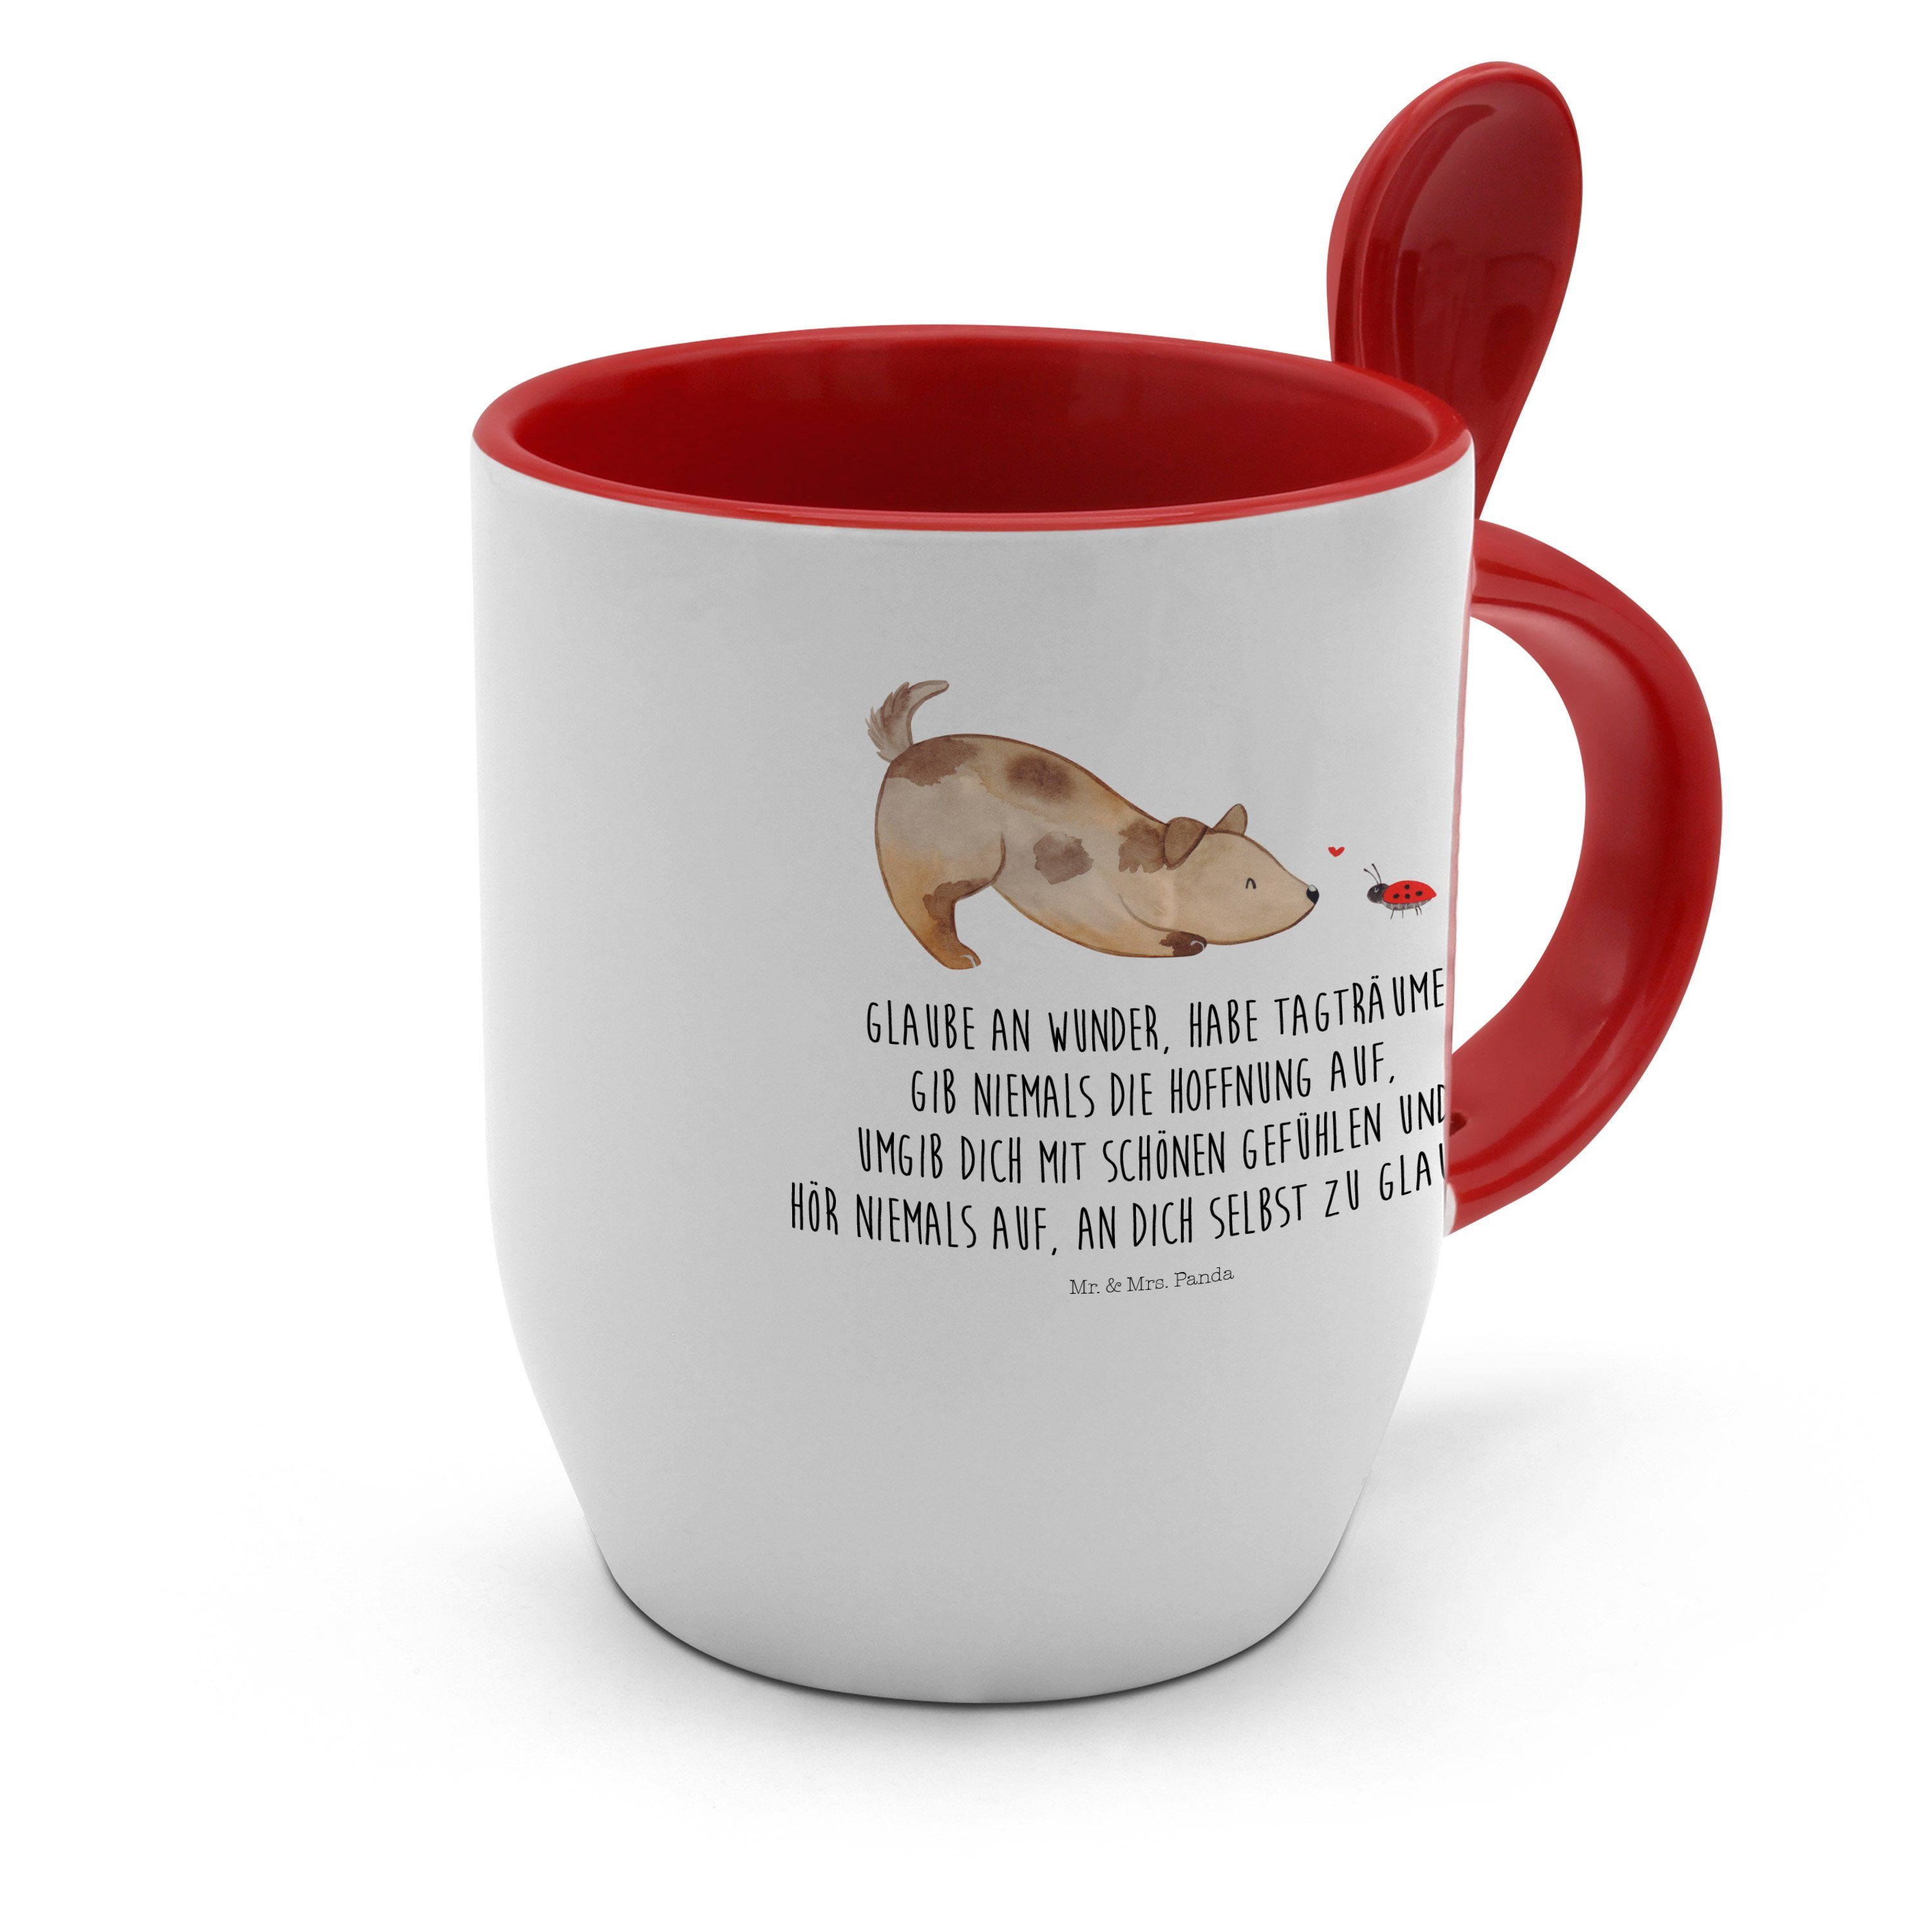 Mr. & Mrs. Panda Tasse Geschenk, Tasse Spruc, - Hund Löffel, - Tasse Keramik mit Marienkäfer mit Weiß